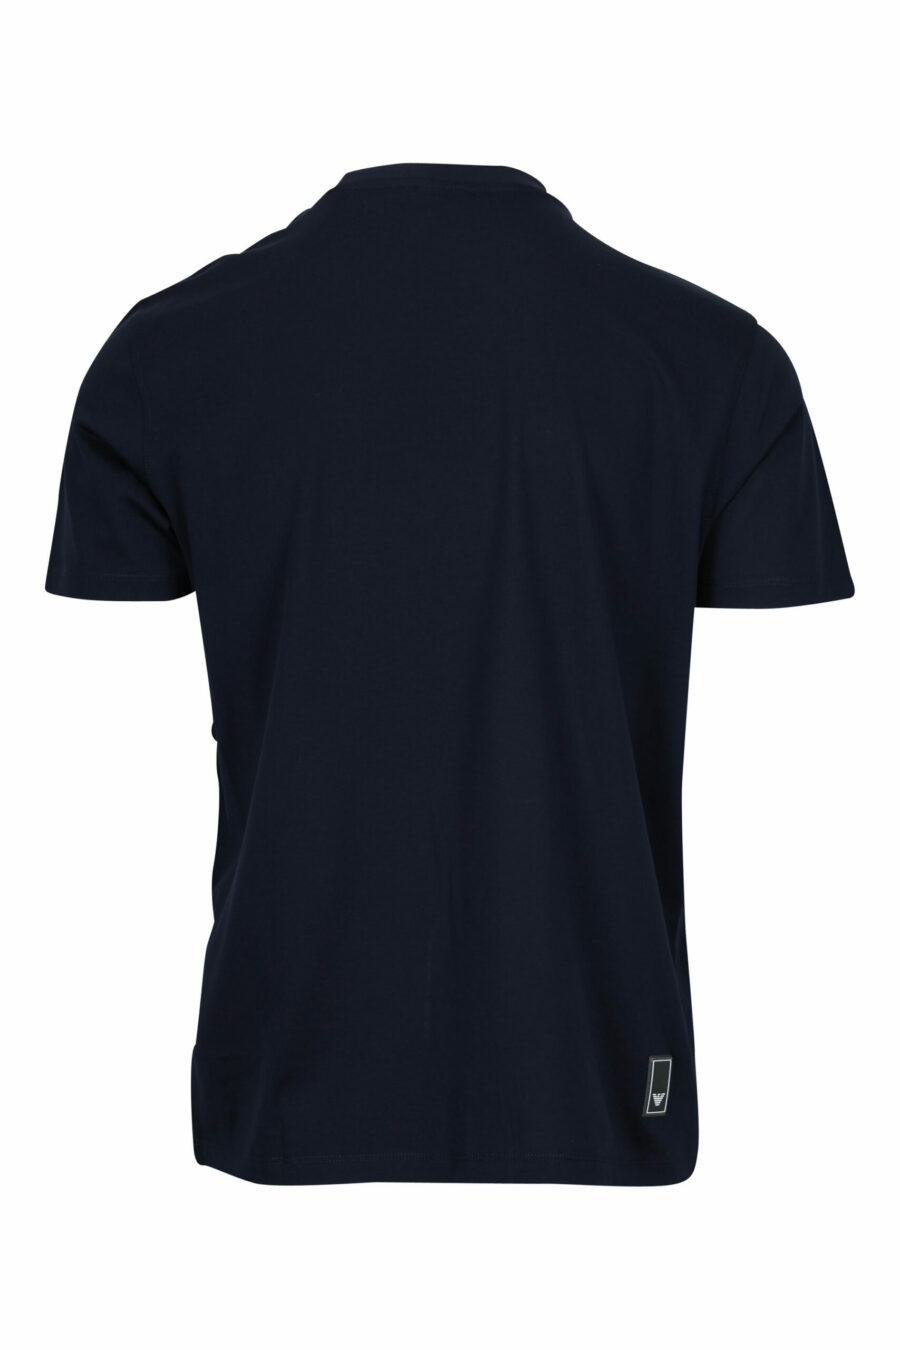 T-shirt azul escura com minilogo de águia - 8058997155687 1 scaled